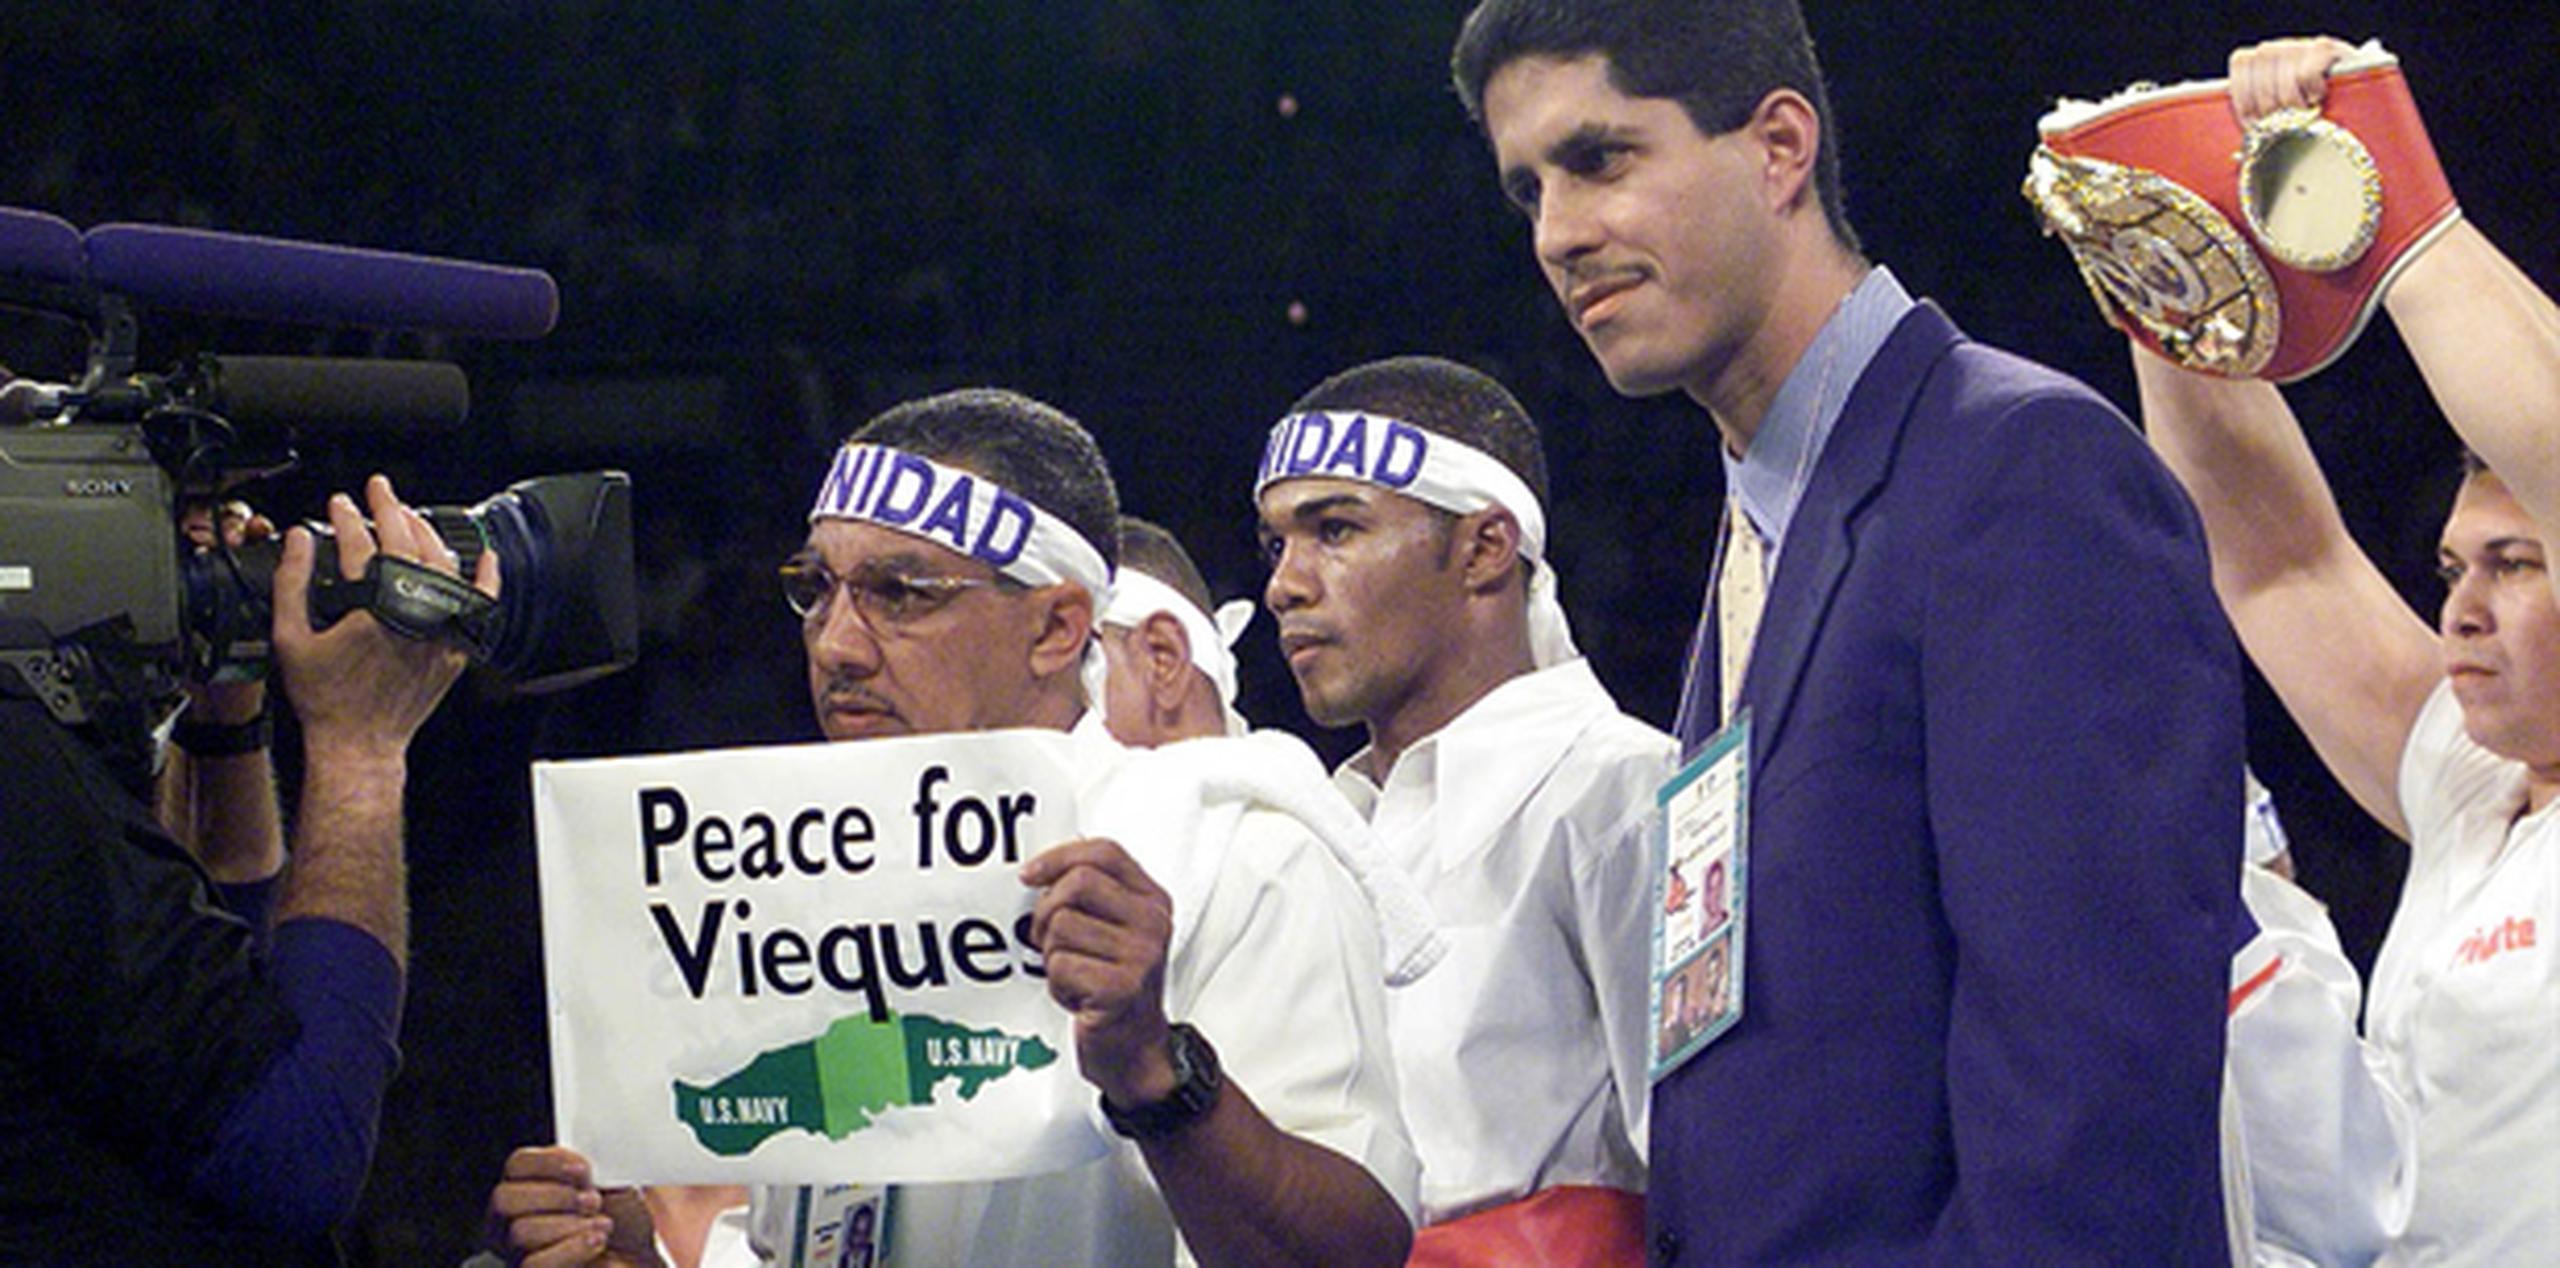 Tito aprovechó el escenario de su combate contra Oscar de la Hoya para proyectar un claro mensaje de que apoyaba la paz para Vieques. (Archivo)